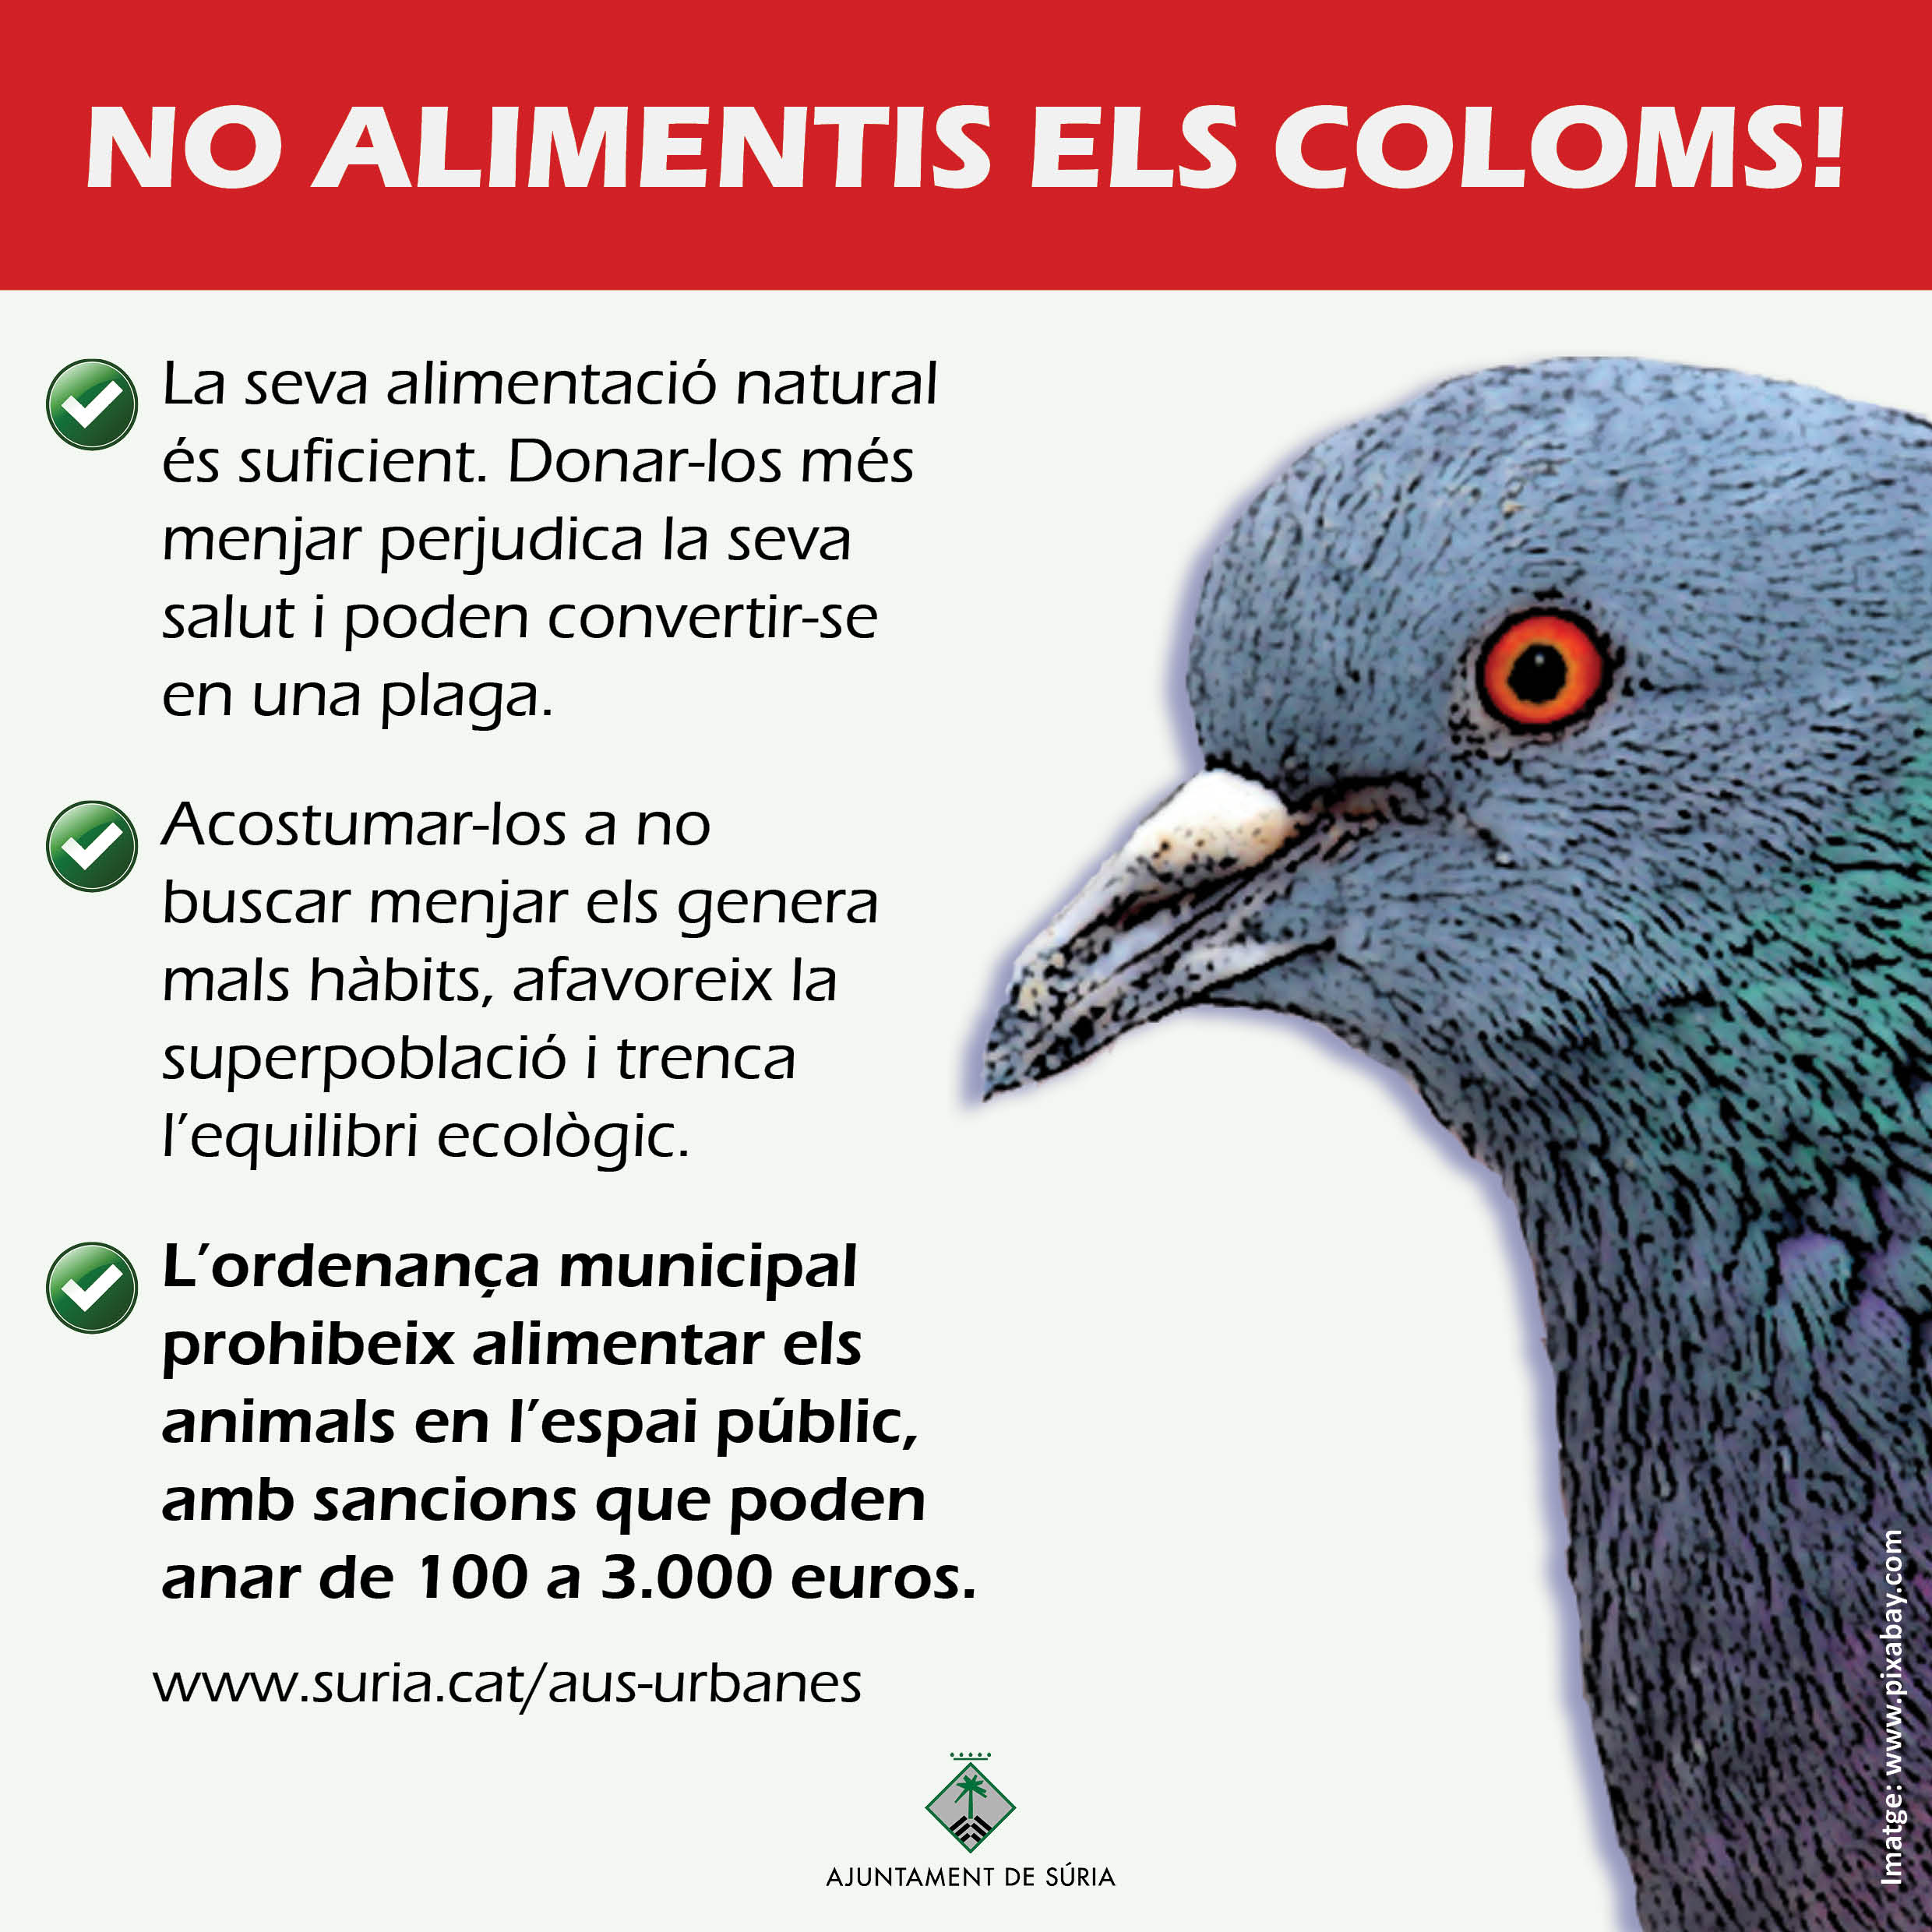 L'Ajuntament posa en marxa una campanya contra la pràctica de donar aliment als coloms i altres aus urbanes 